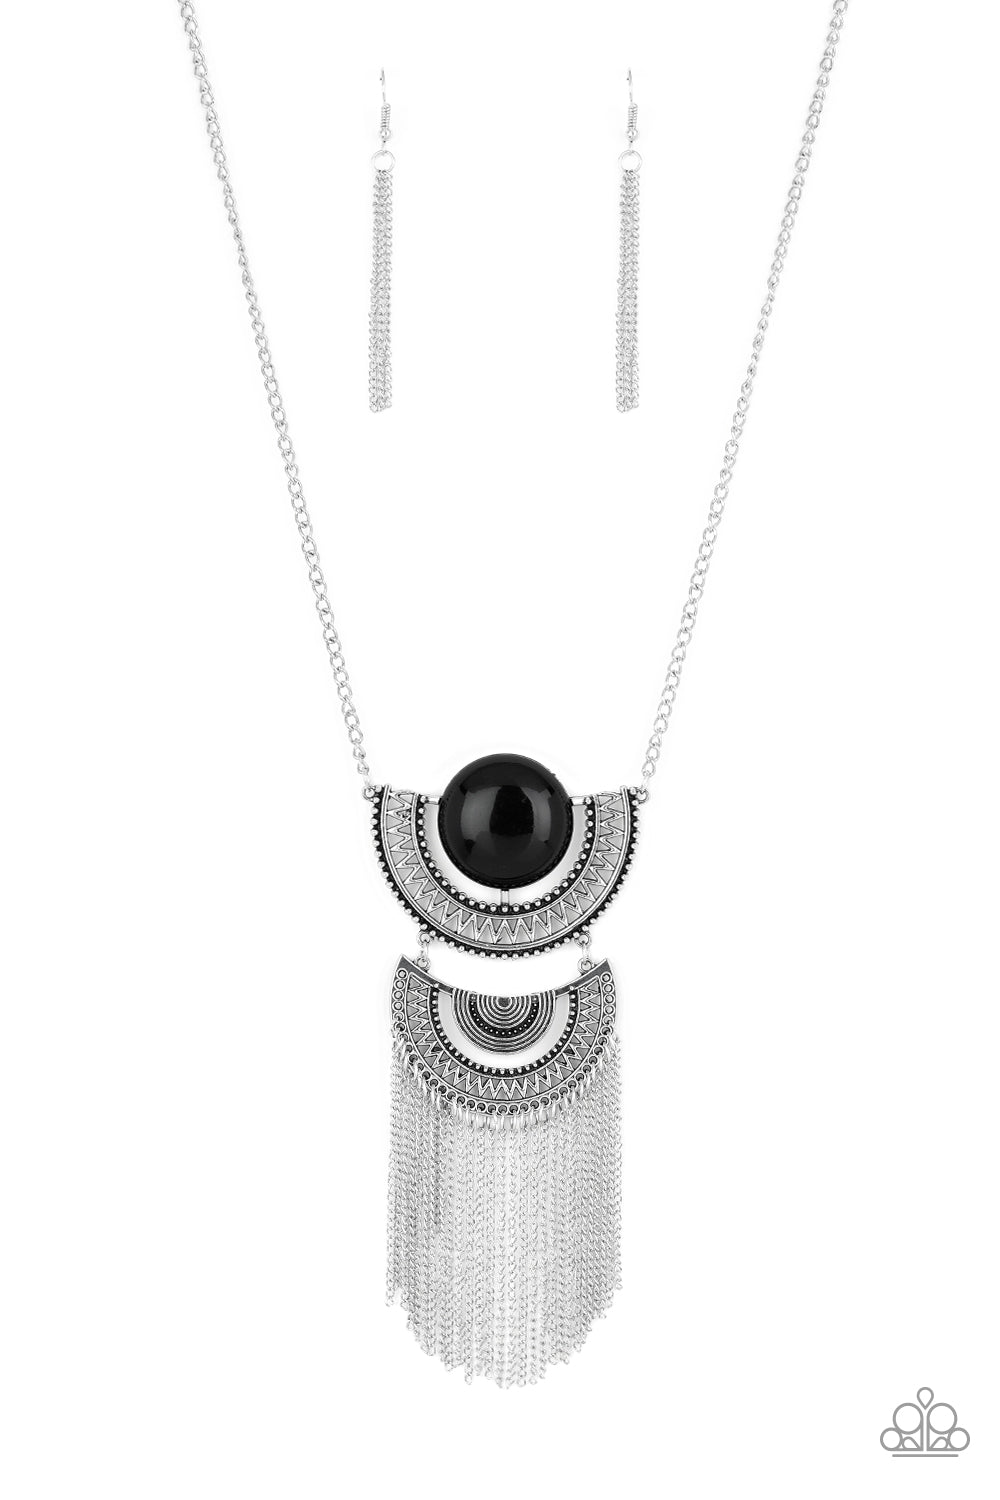 Desert Diviner Necklace (Black, Silver)